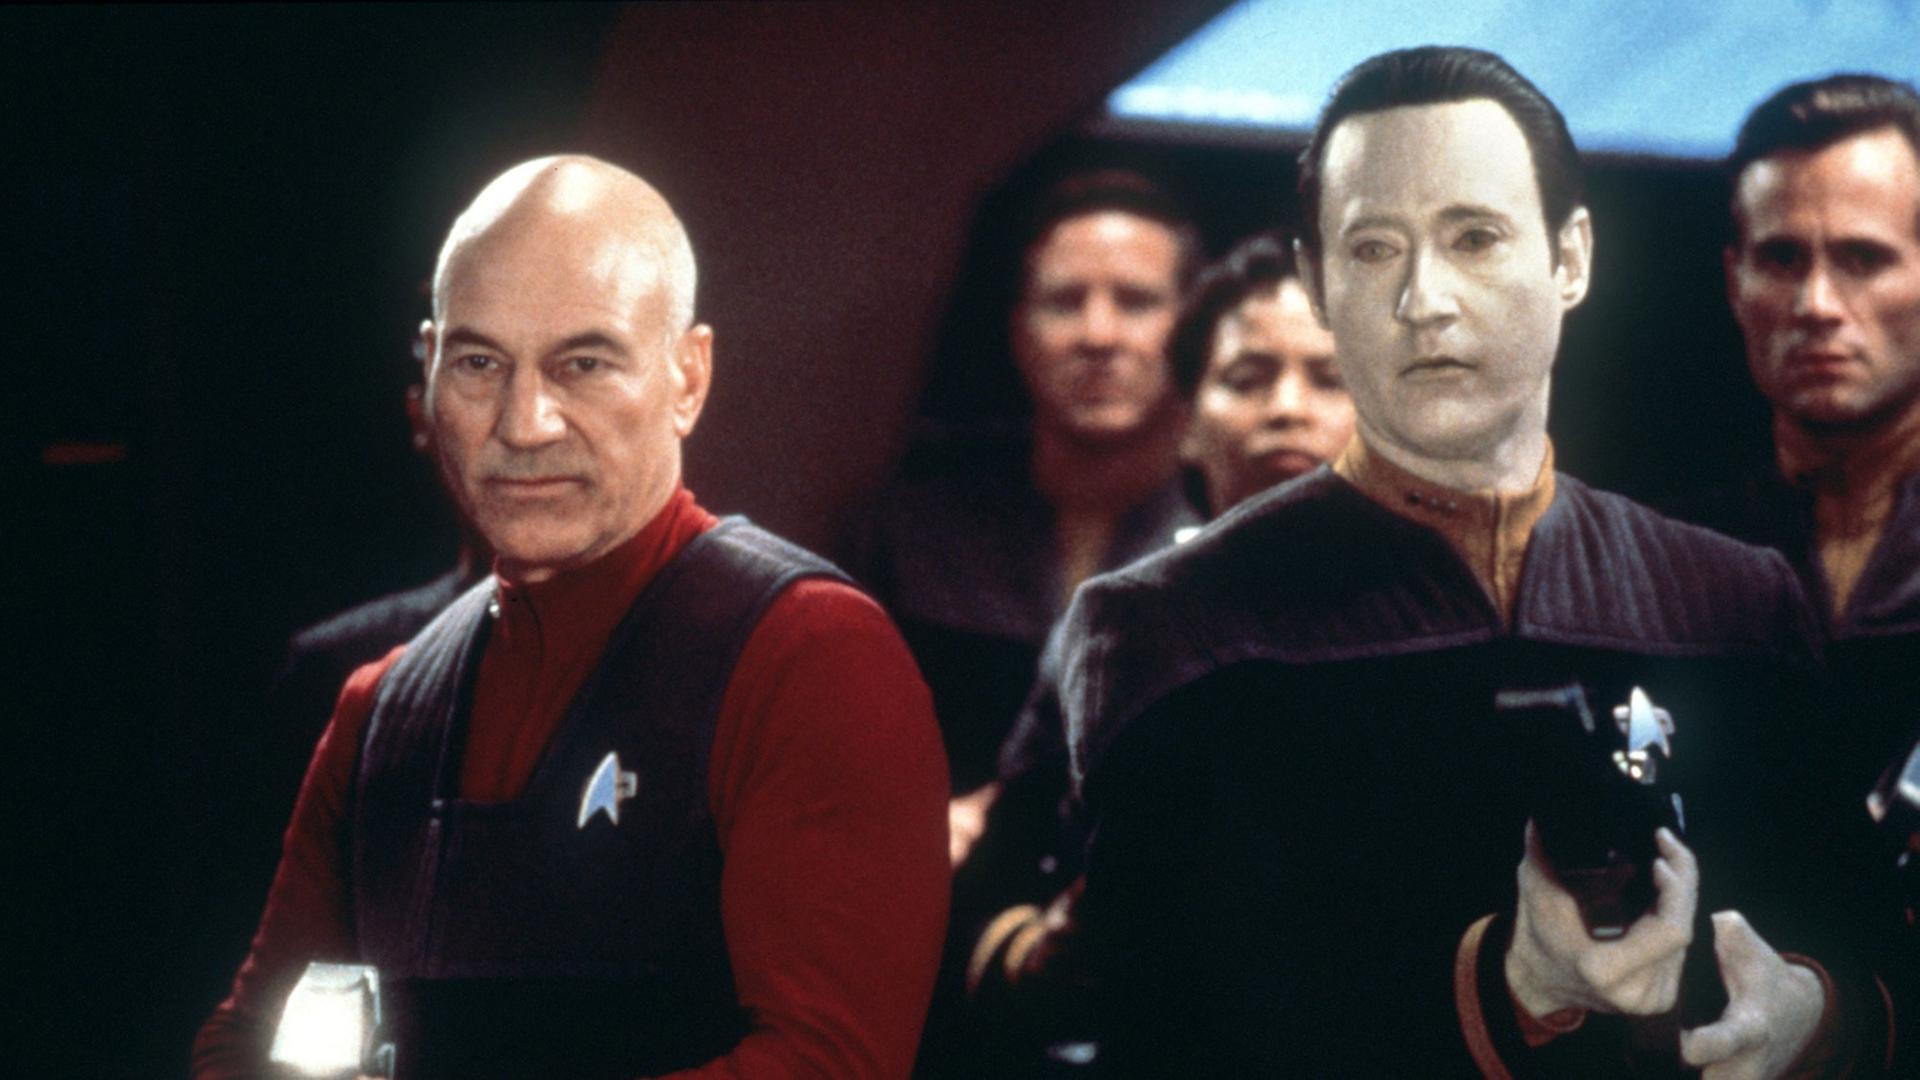 Szene aus dem Kinofilm "Star Trek - Der erste Kontakt" mit Patrick Stewart (Captain Jean Luc Picard, l) und Brent Spiner (Commander Data).